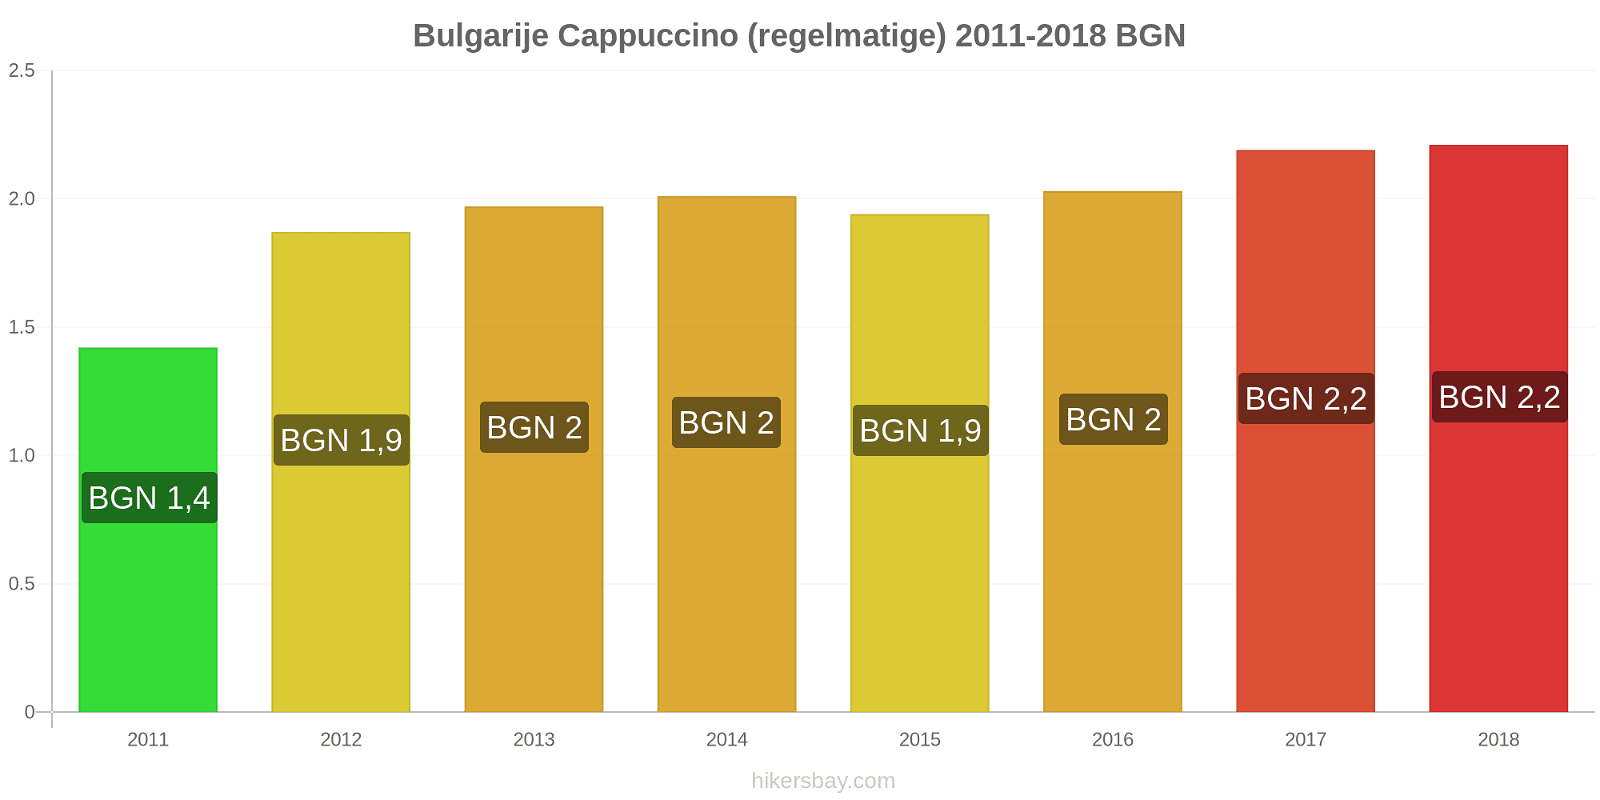 Bulgarije prijswijzigingen Cappuccino (regulier) hikersbay.com